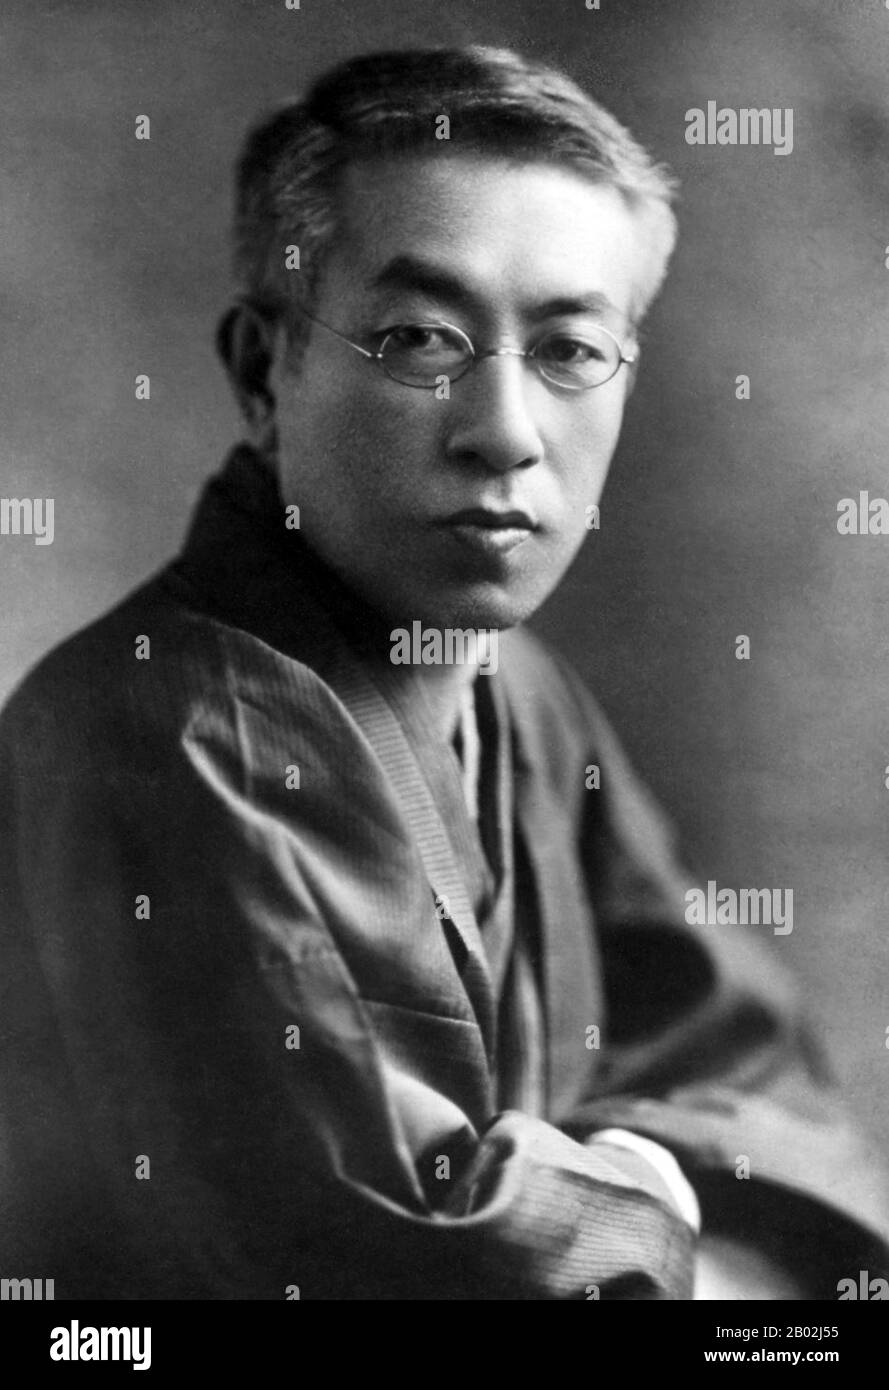 Giappone: Tōson Shimazaki (島崎 藤村 Shimazaki Tōson, 25 marzo 1872 – 22 agosto 1943) è il nome in penna di Shimazaki Haruki, un autore giapponese, attivo nei periodi Meiji, Taishō e Shōwa del Giappone. Iniziò la sua carriera come poeta romantico, ma continuò a stabilirsi come un grande sostenitore del naturalismo nella fiction giapponese. Foto Stock